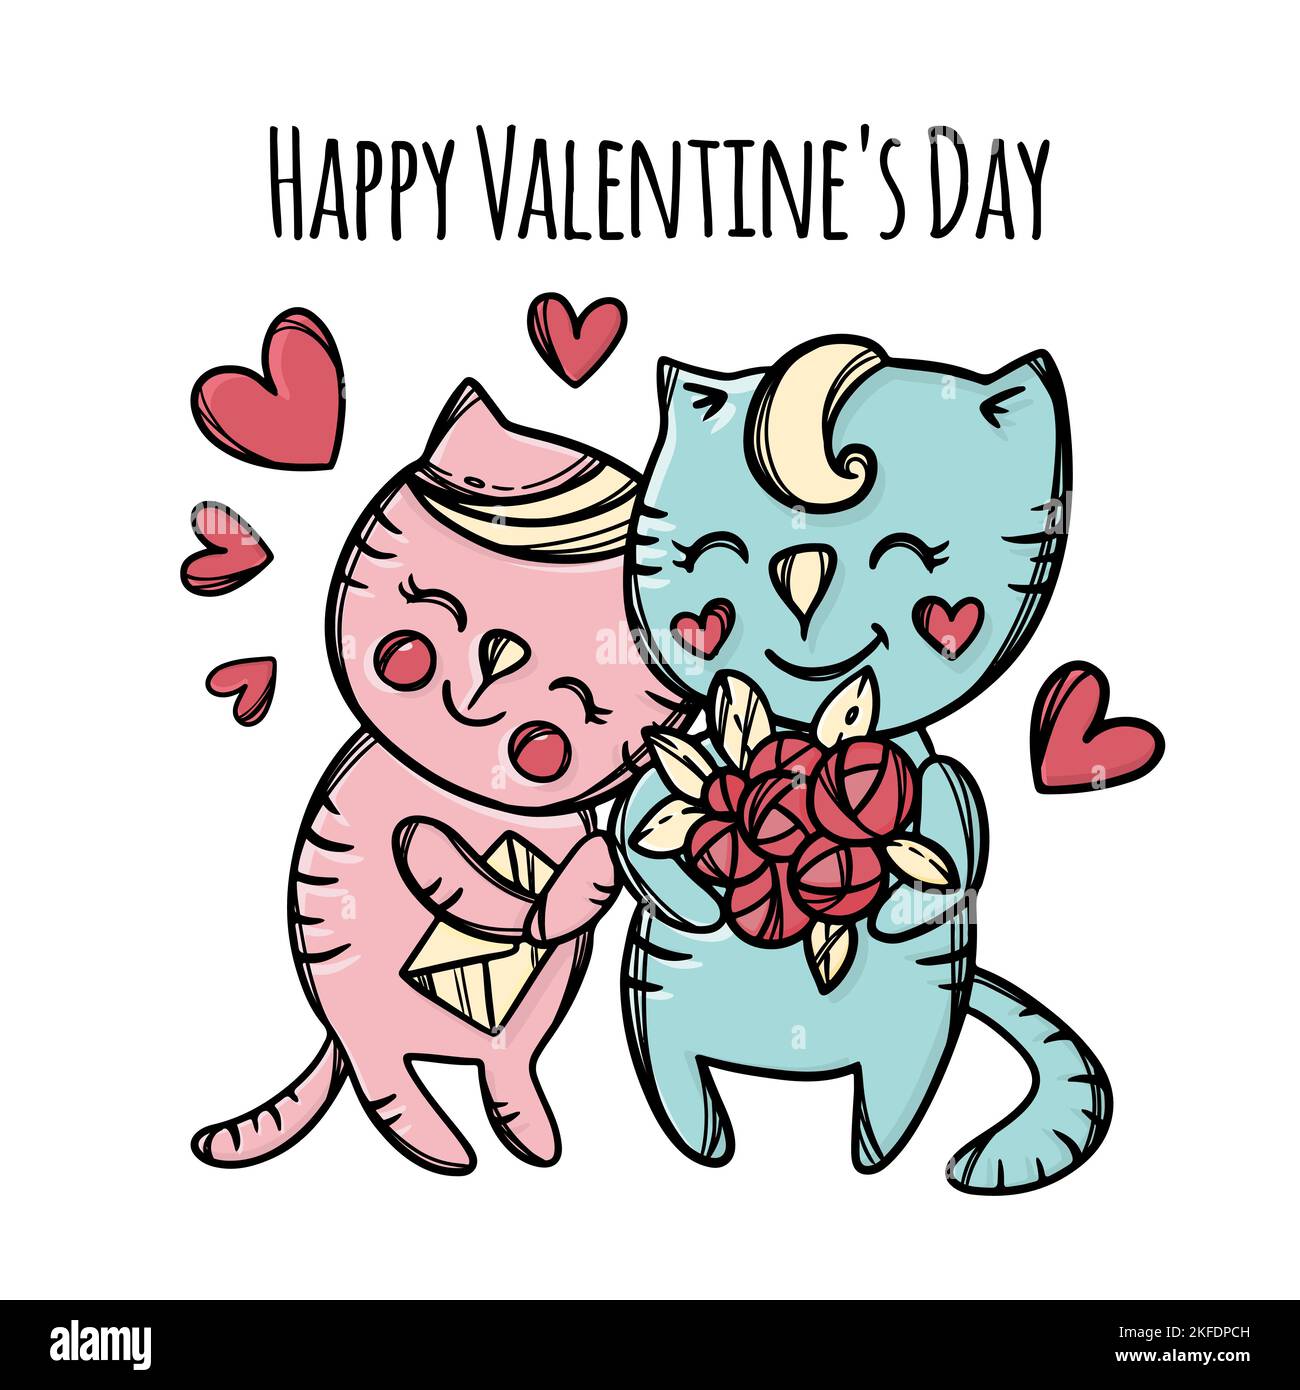 BOUQUET PER CAT dà ad amato Kitty che Cuddles Lovely Cat Boy giorno degli amanti San Valentino Cartoon animali disegnati a mano clip Art Vector Illustration per Illustrazione Vettoriale